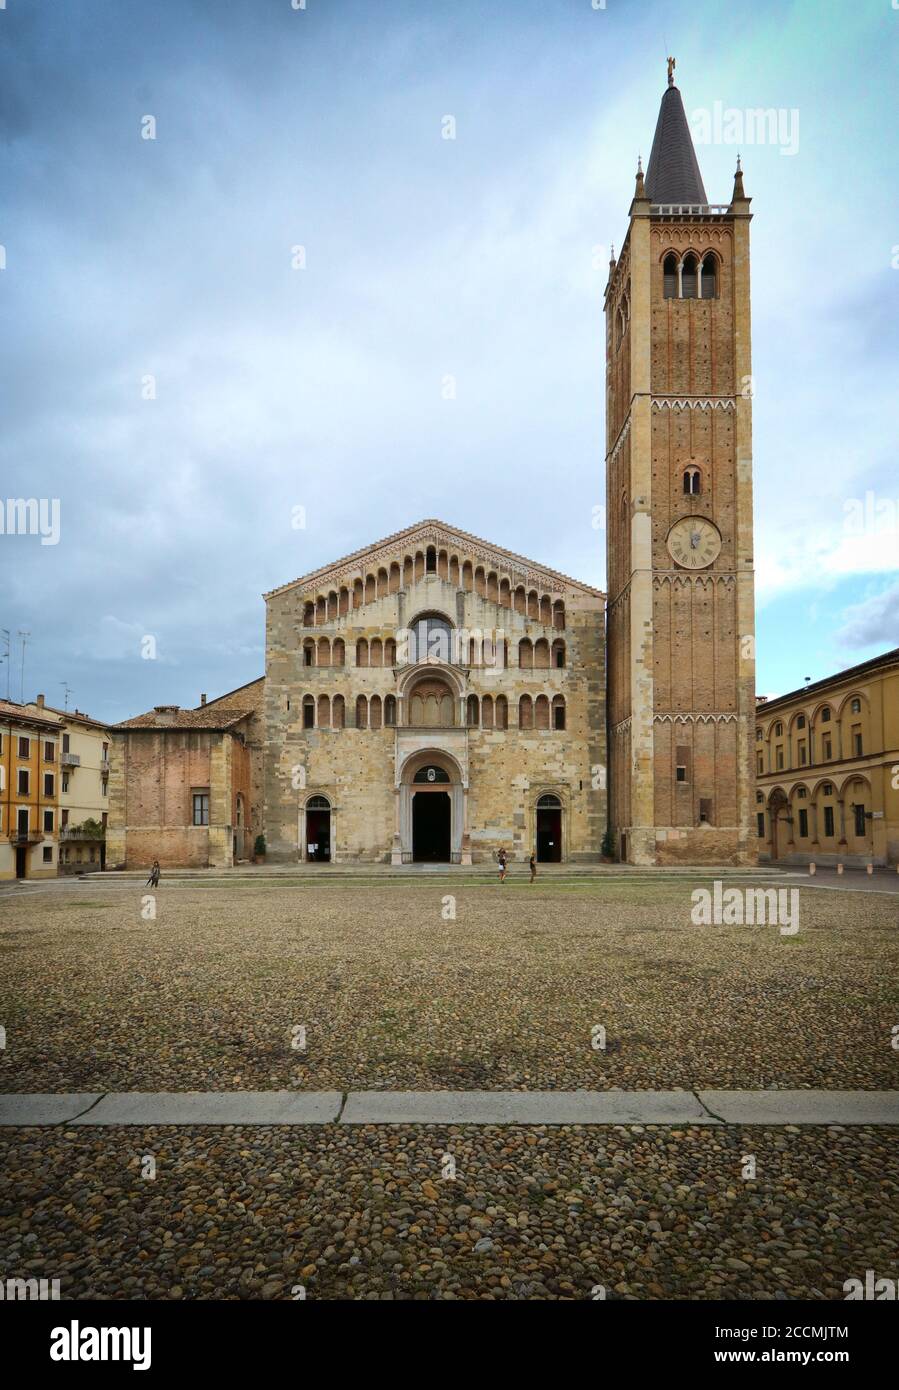 Parme, vue sur la cathédrale romane et le clocher de la place duomo, Emilia Romagna, Italie, patrimoine mondial de l'unesco Banque D'Images